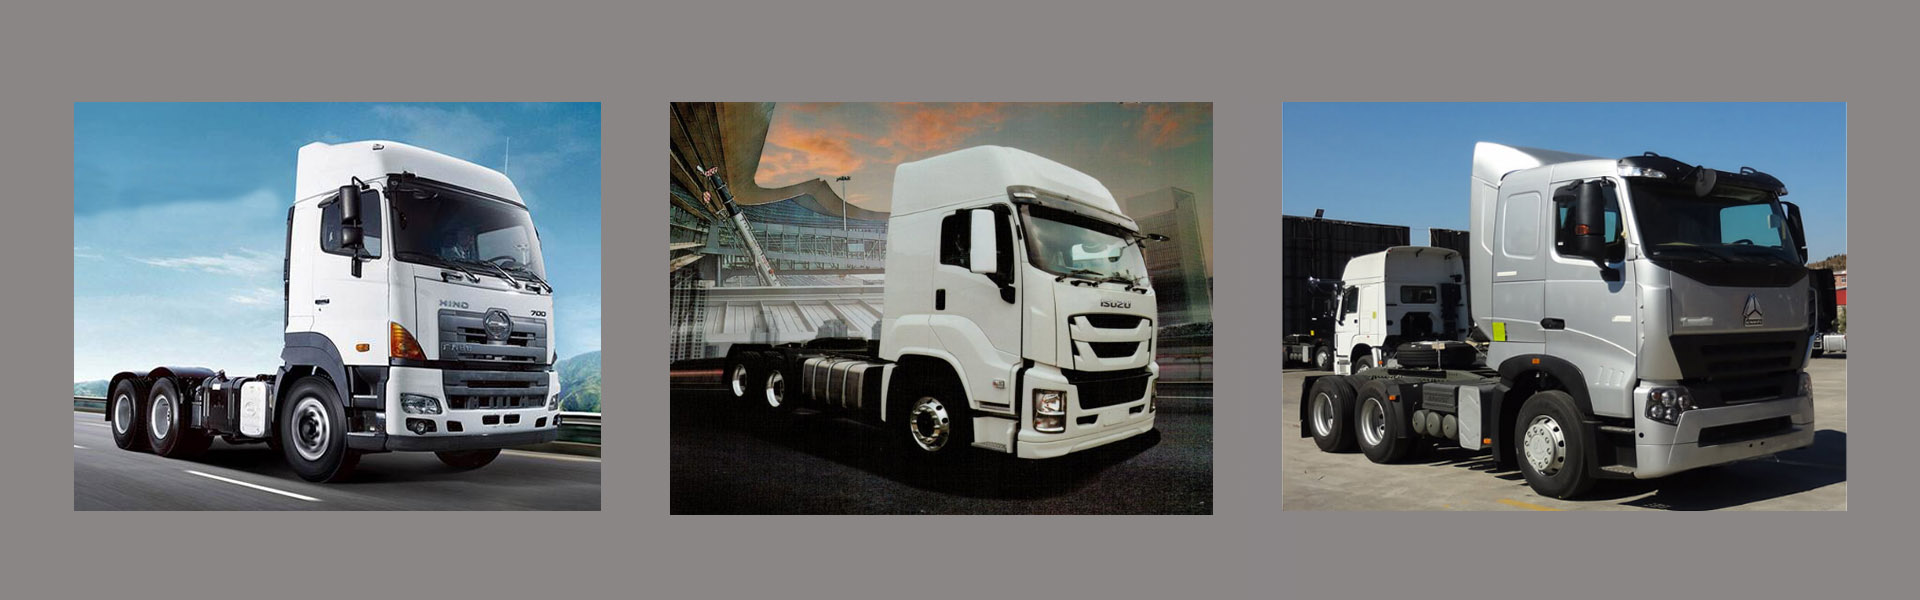 China Truck International Limited